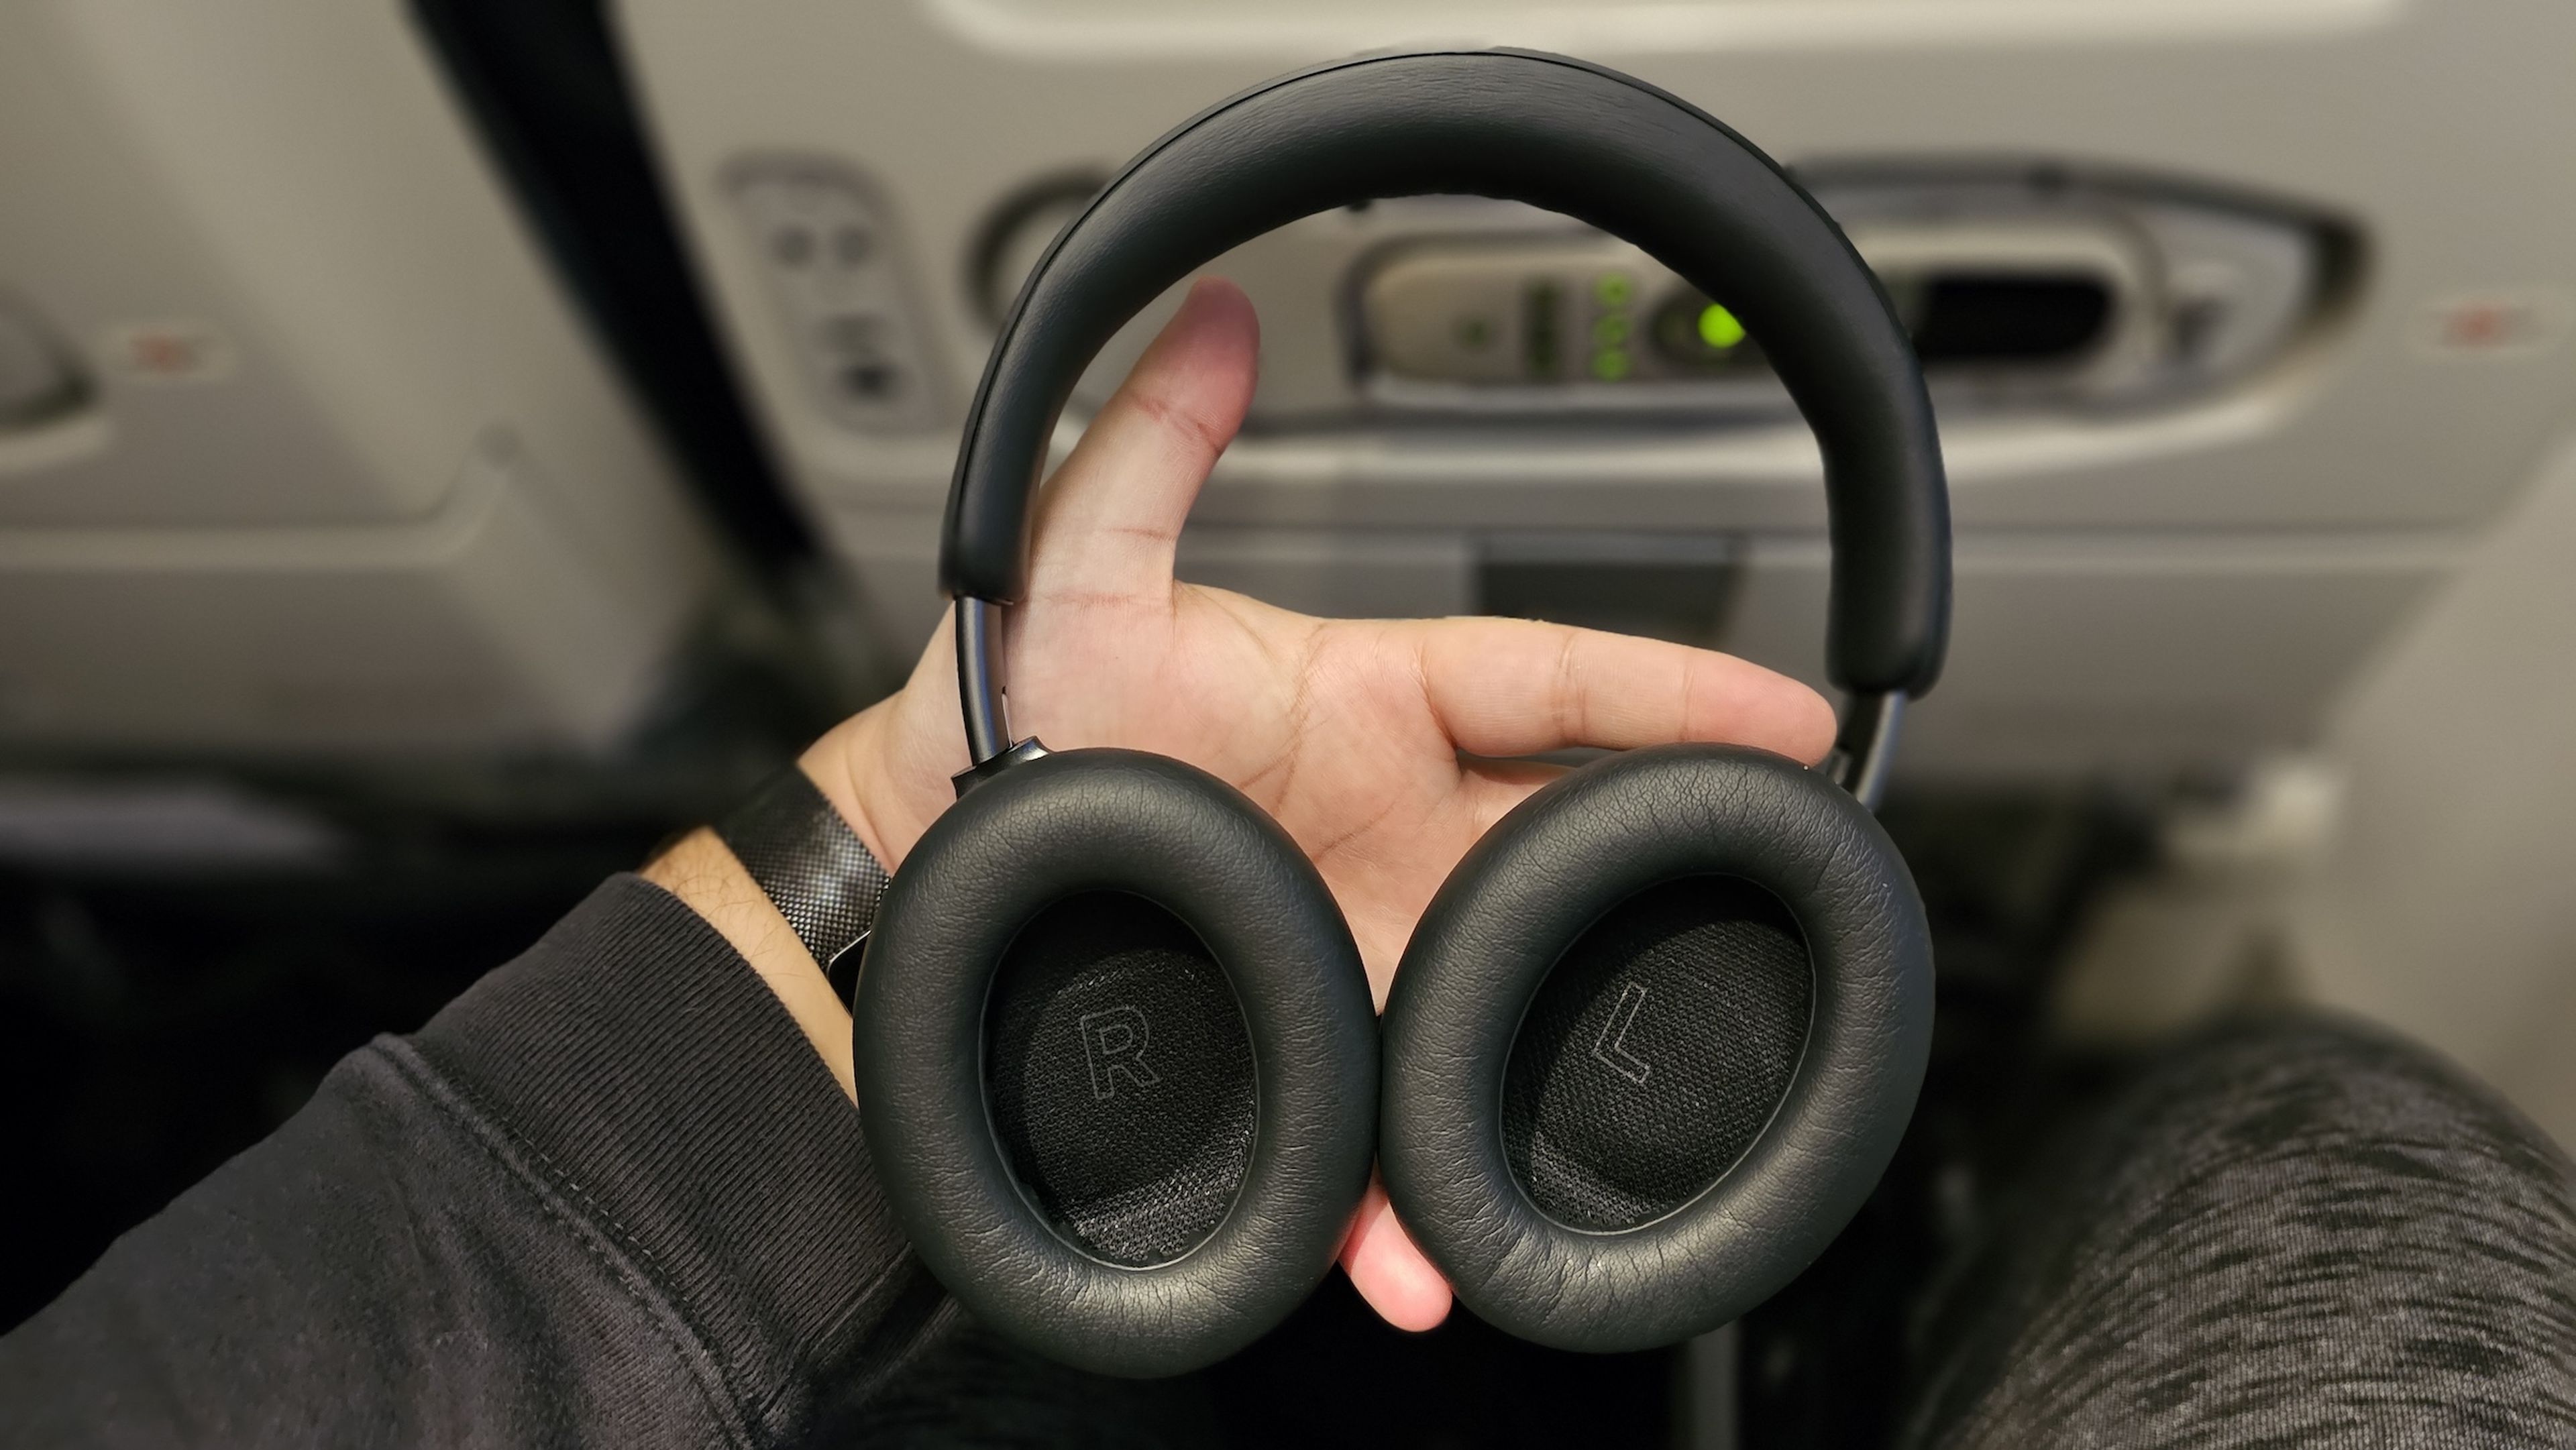 He probado los QuietComfort Ultra, los auriculares más avanzados (y caros)  de Bose: esta es mi opinión